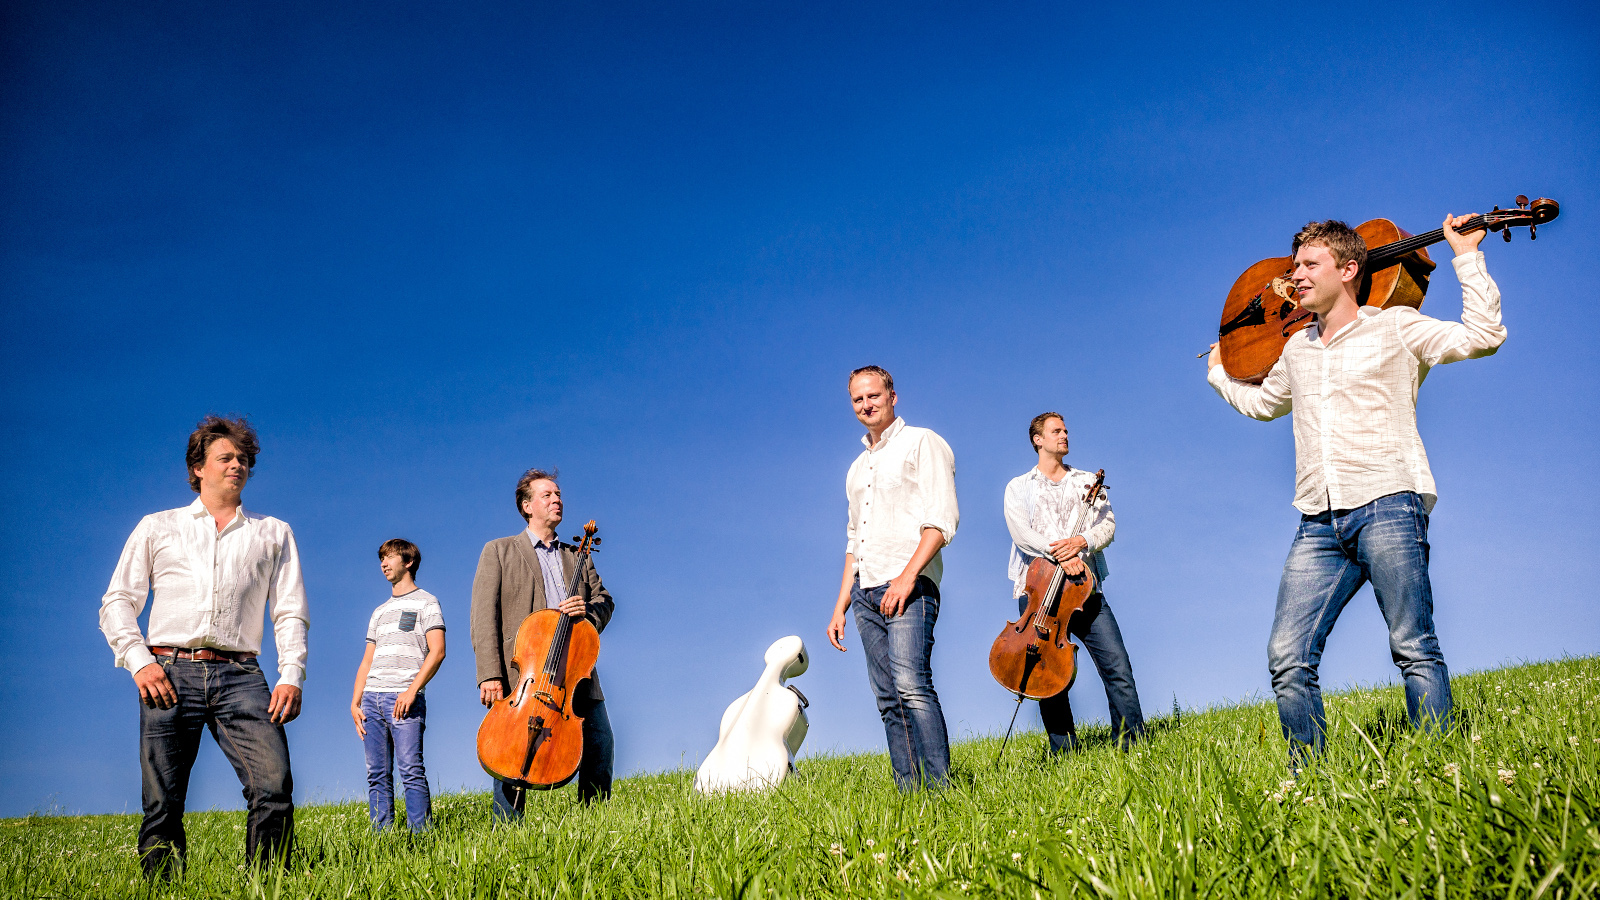 Kuvassa on Total Cello Ensemble, jonka kuusi jäsentä seisovat nurmikolla rinteen päällä.  Takana on kirkkaan sininen taivas.  Jäsenillä on valkoiset paidat ja farkut sekä soittimet mukanaan.